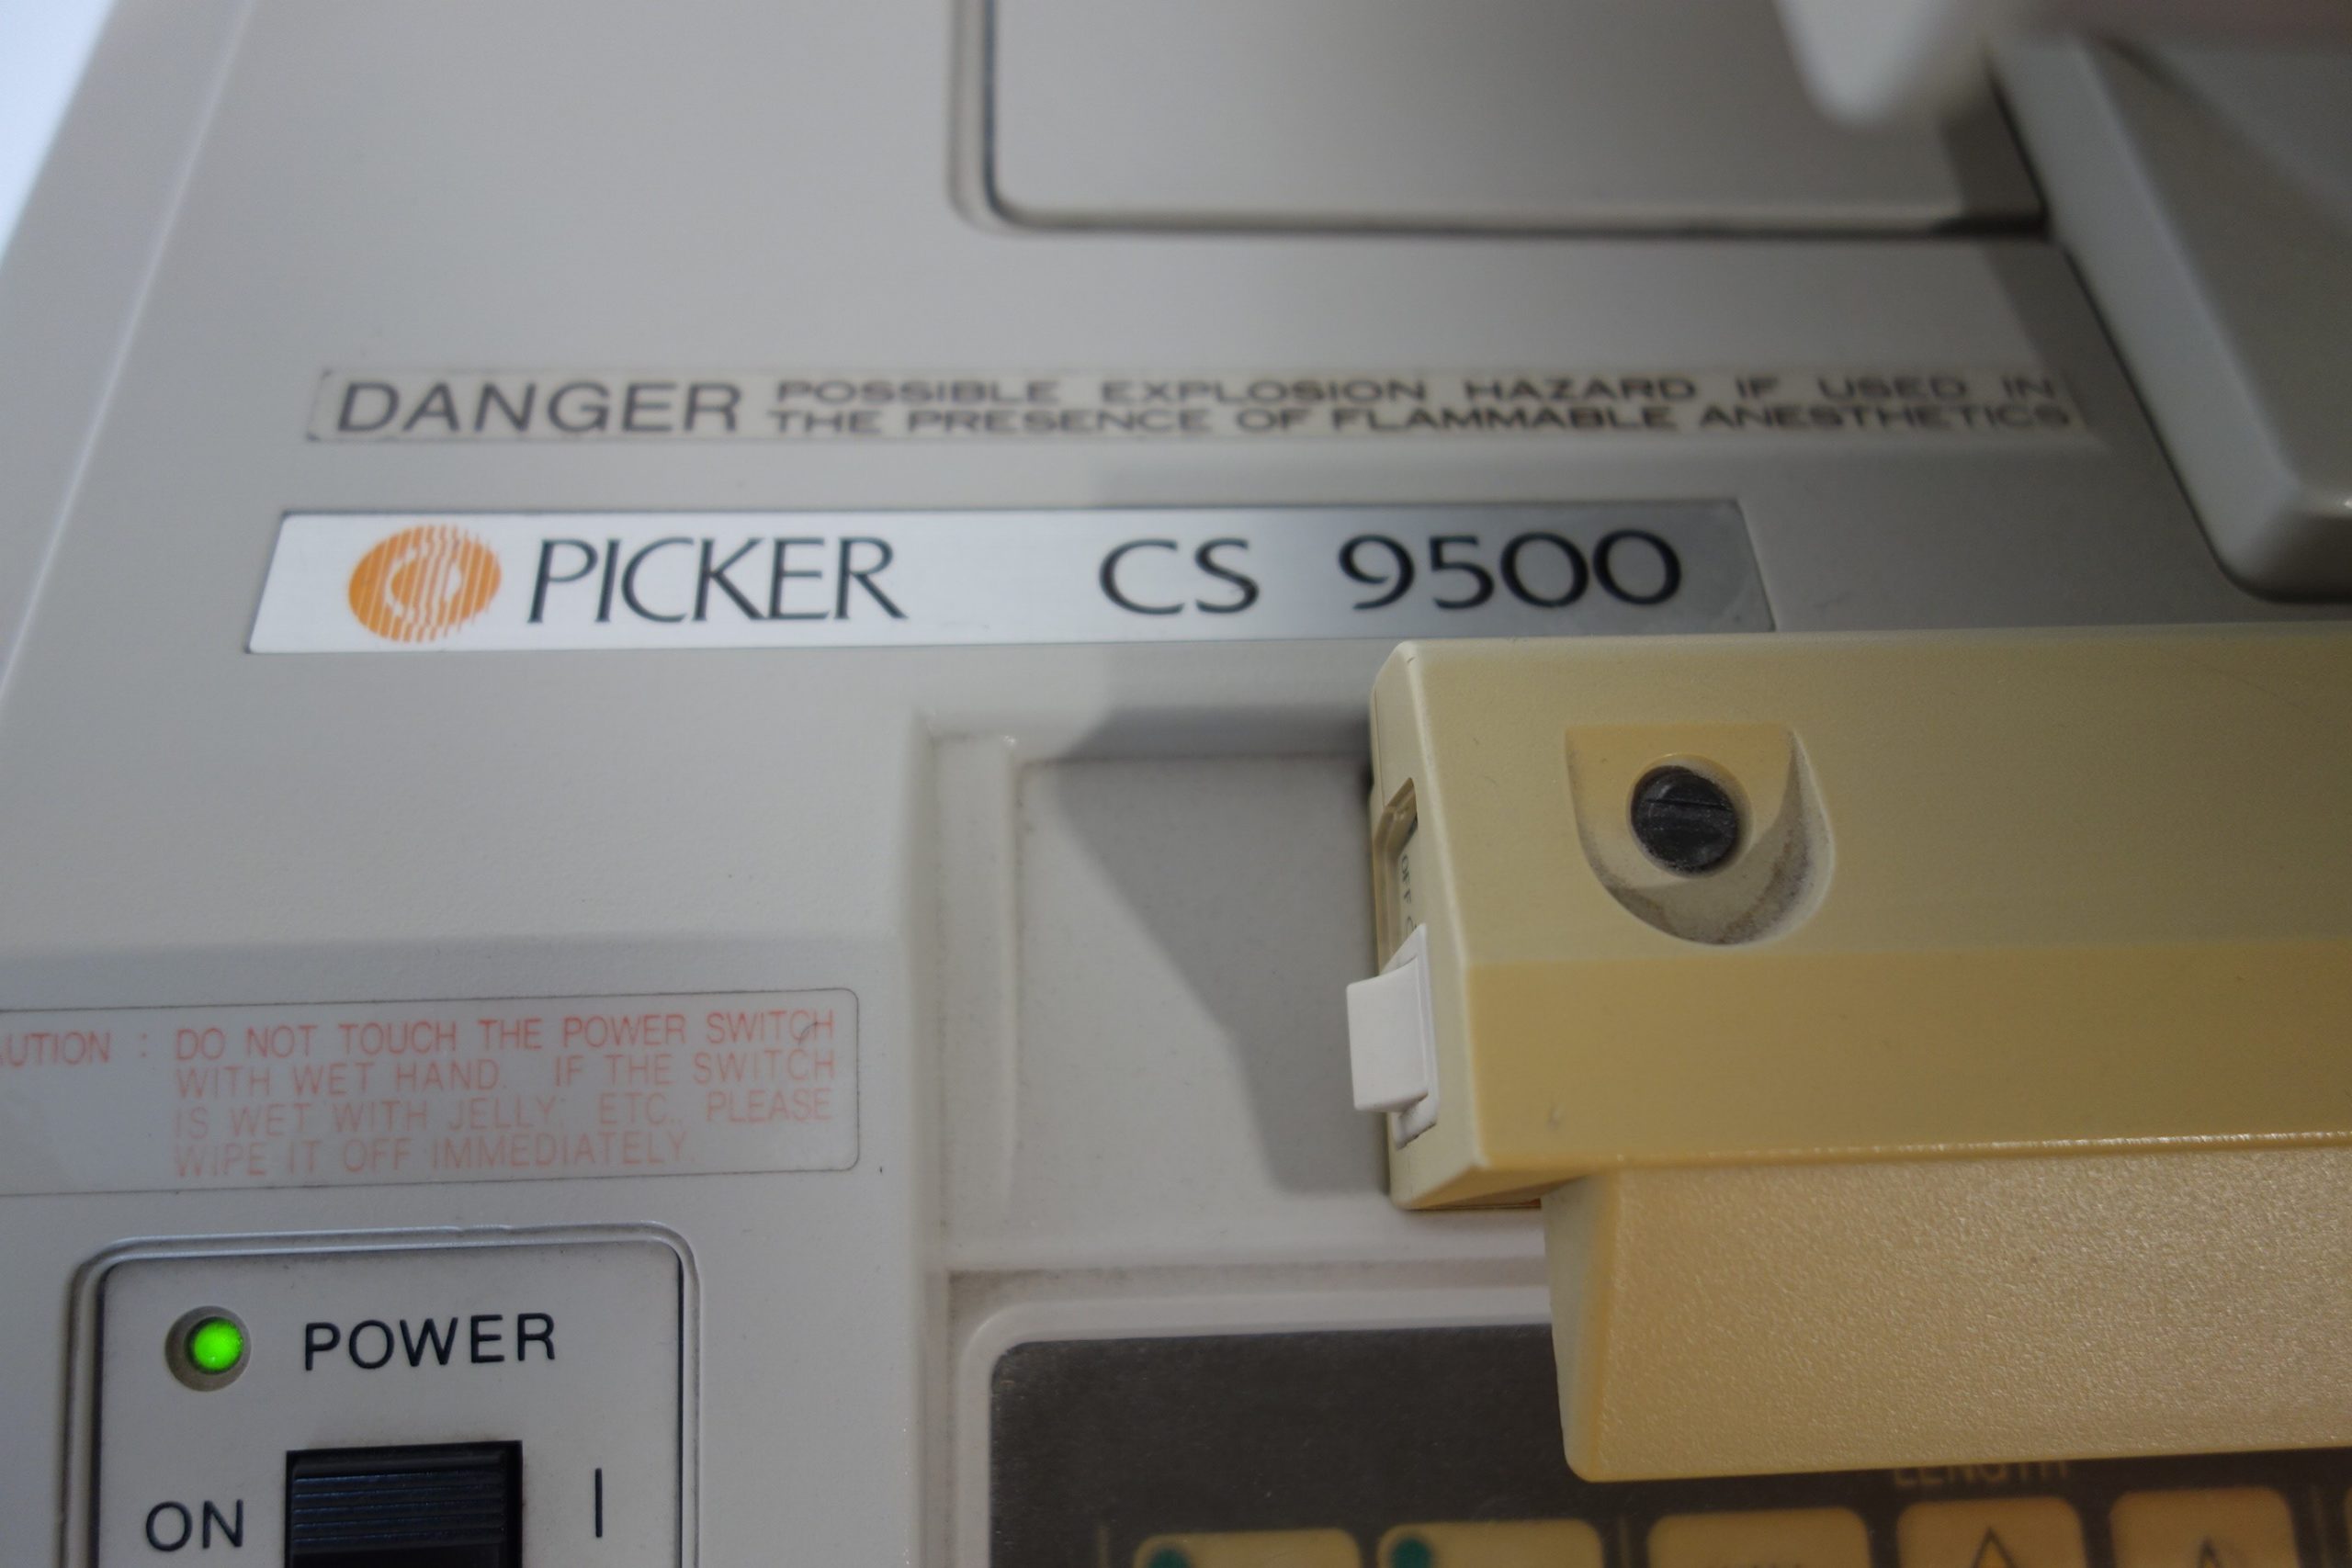 hitachi-picker-cs-9500-mit-2-sonden-und-printer-4317